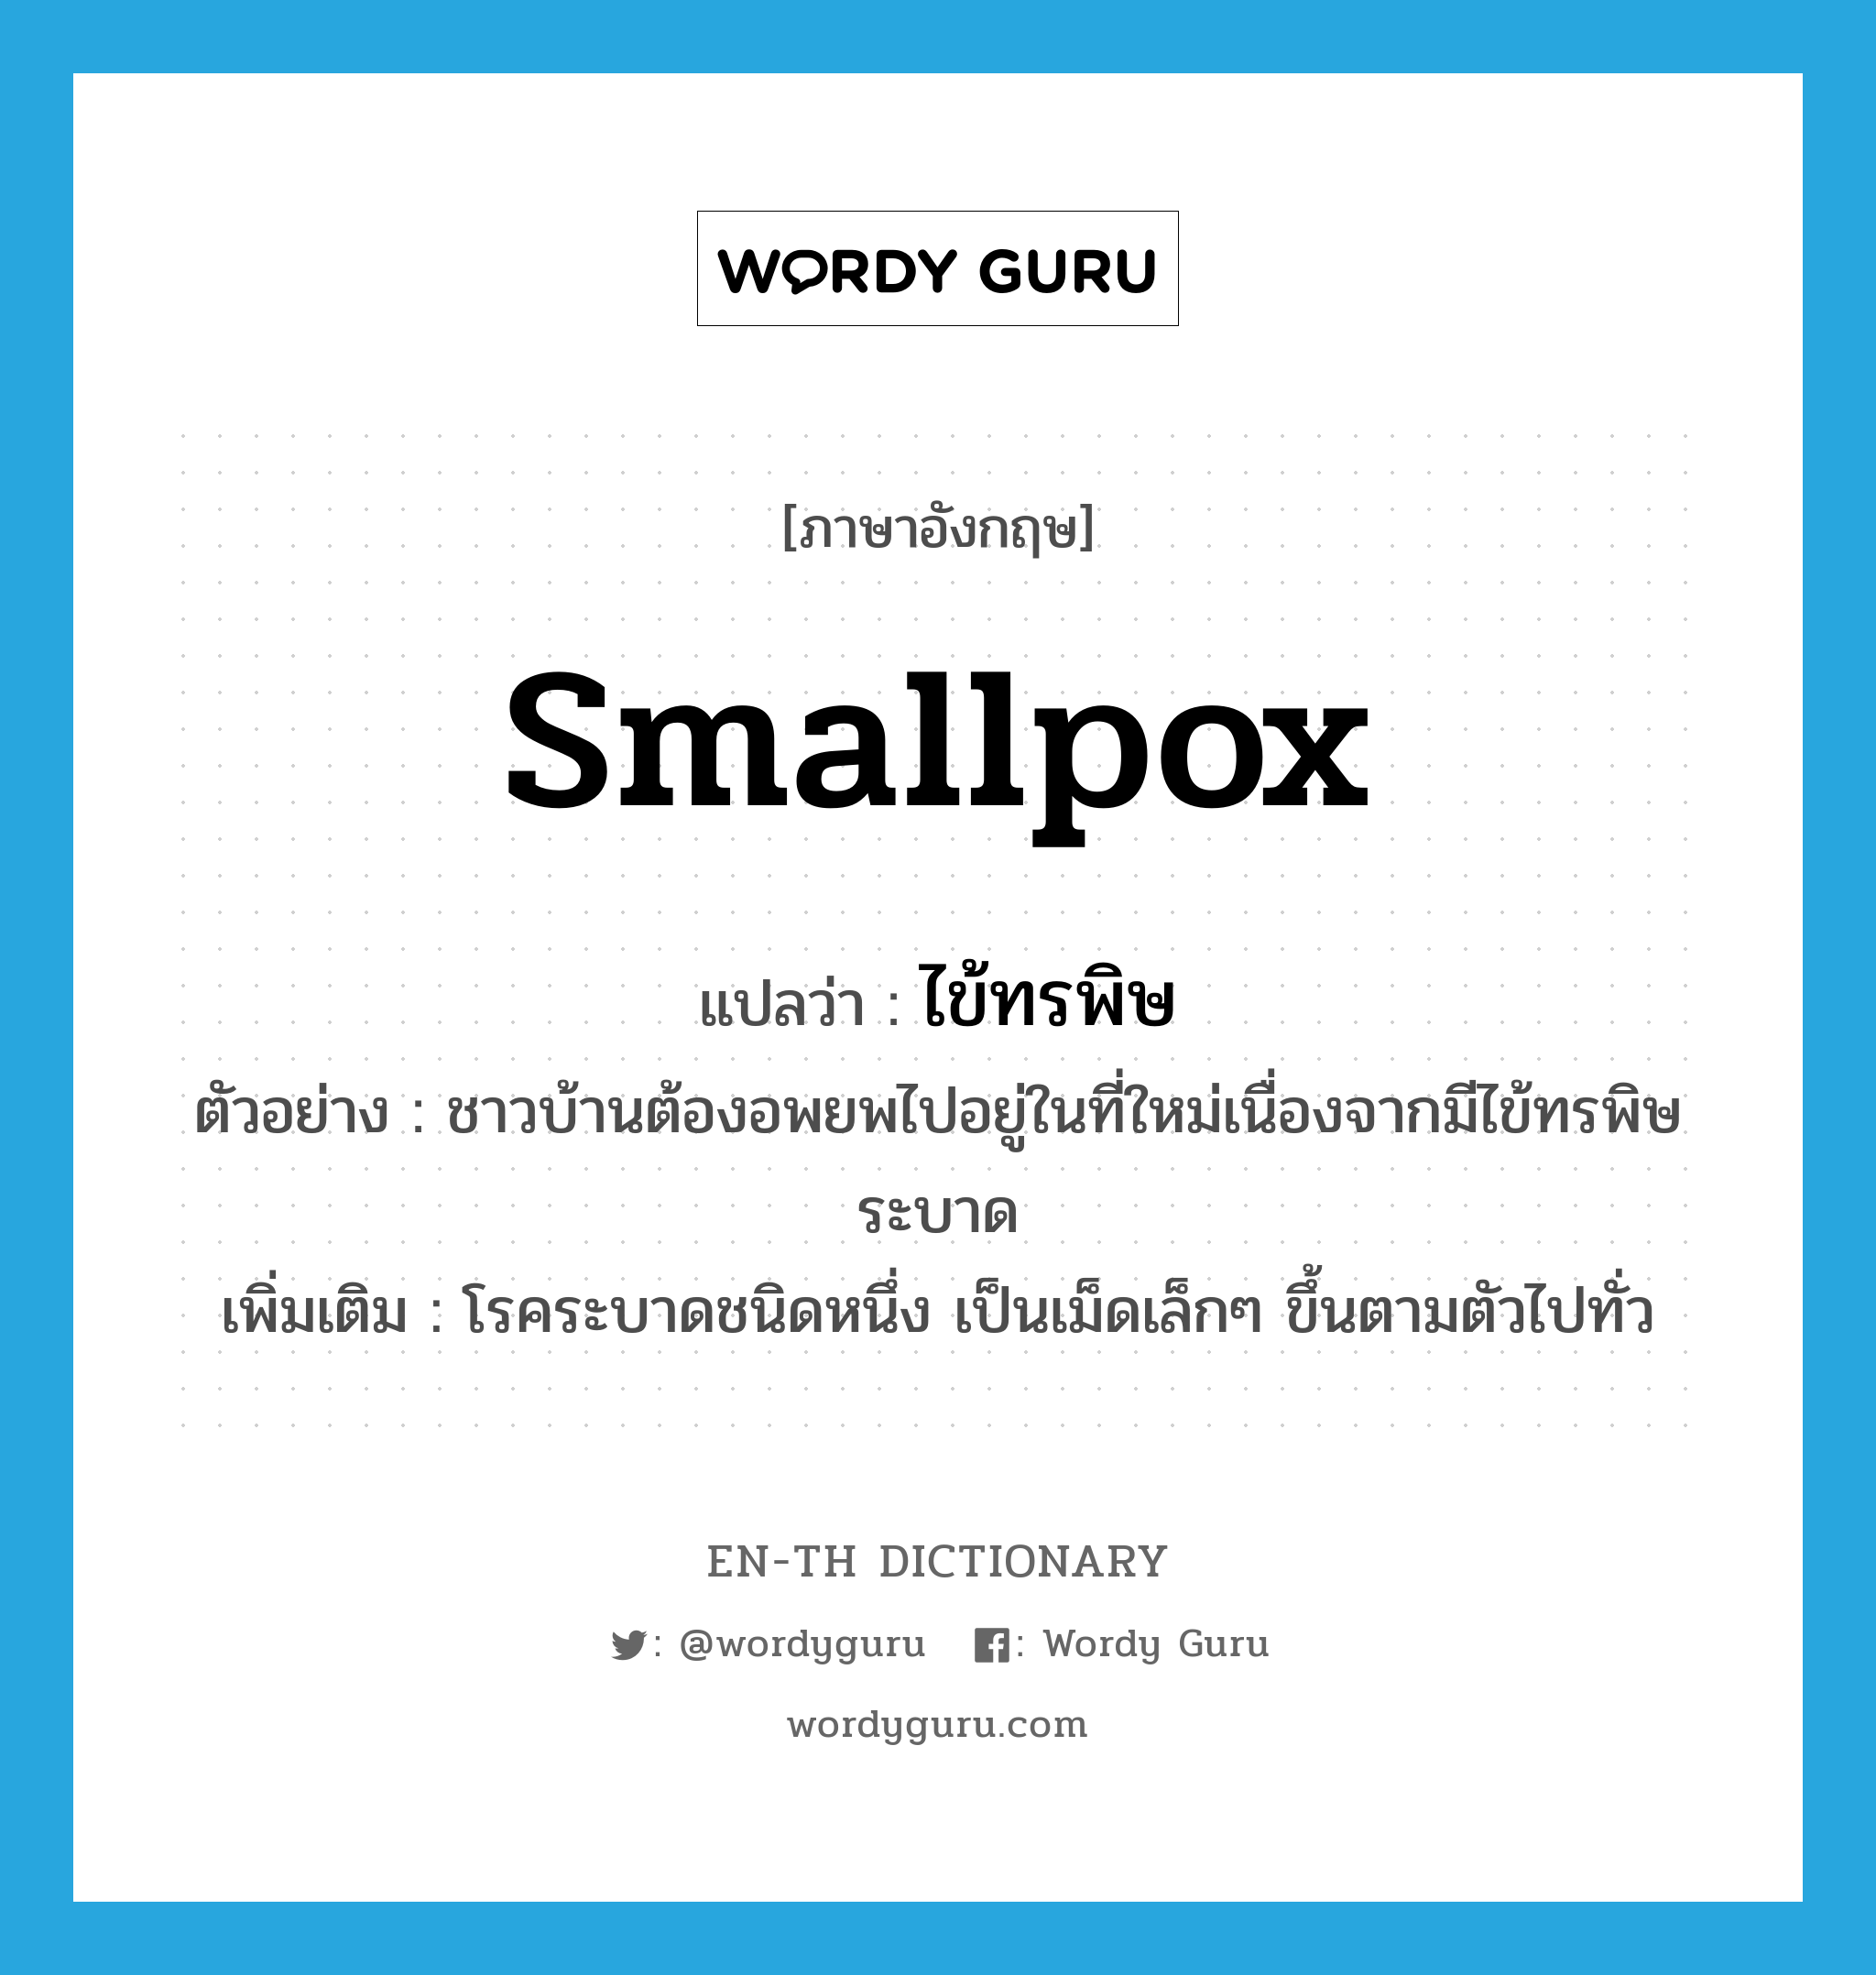 smallpox แปลว่า?, คำศัพท์ภาษาอังกฤษ smallpox แปลว่า ไข้ทรพิษ ประเภท N ตัวอย่าง ชาวบ้านต้องอพยพไปอยู่ในที่ใหม่เนื่องจากมีไข้ทรพิษระบาด เพิ่มเติม โรคระบาดชนิดหนึ่ง เป็นเม็ดเล็กๆ ขึ้นตามตัวไปทั่ว หมวด N